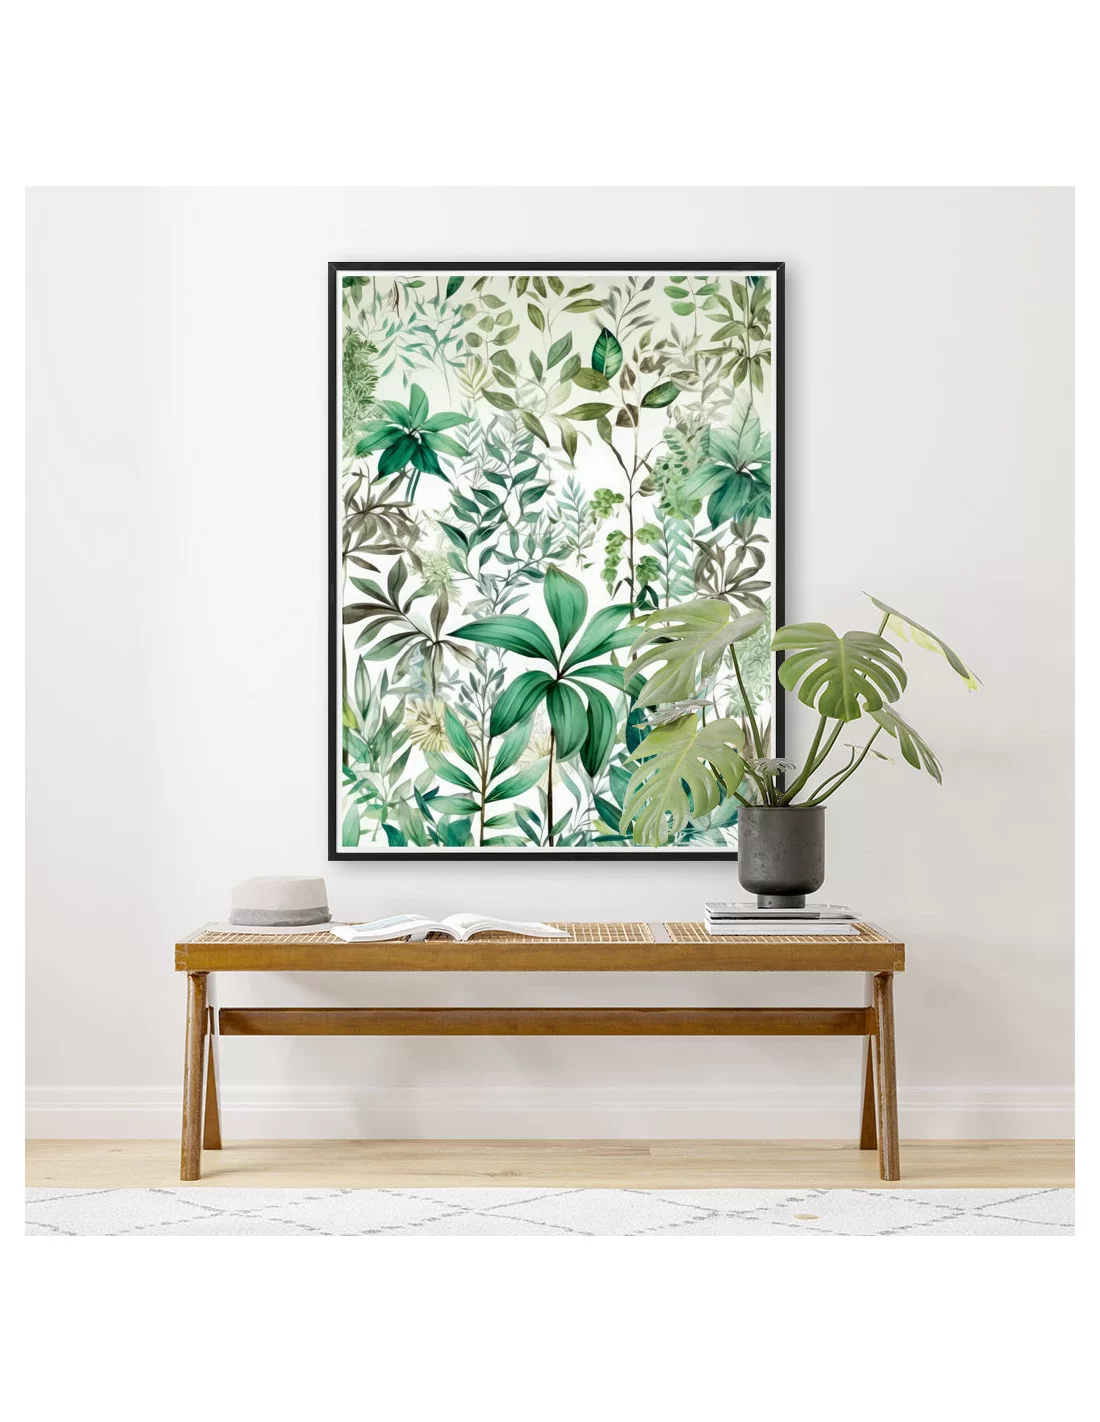 Décoration murale Tirage d'art plante verte , poster botanique